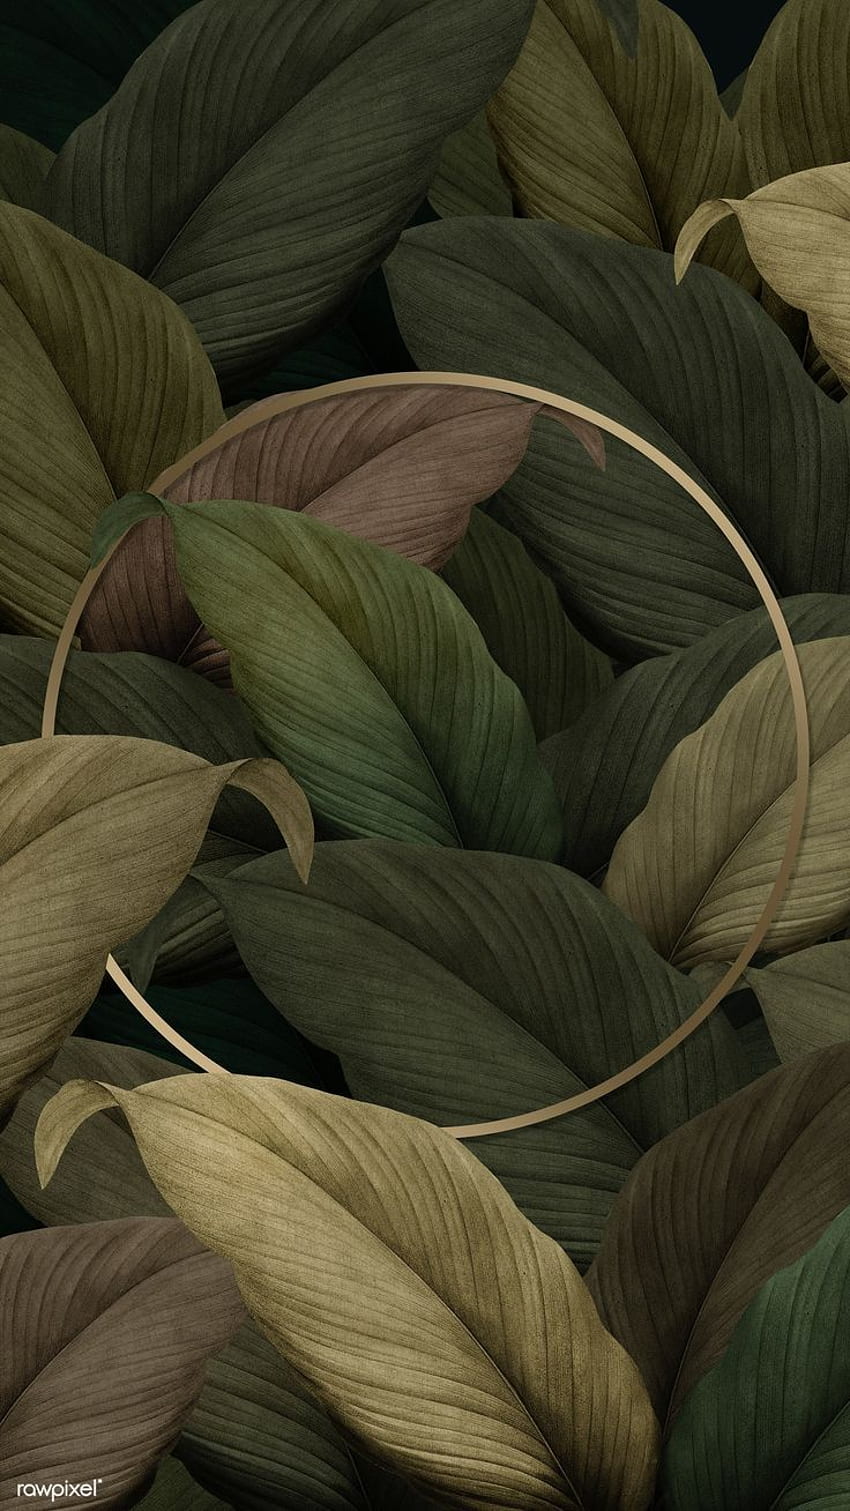 2020년 열대 잎에 있는 금색 원형 프레임의 프리미엄 삽화.액자, 잎 배경, 열대 잎, 열대 식물 그리기 HD 전화 배경 화면